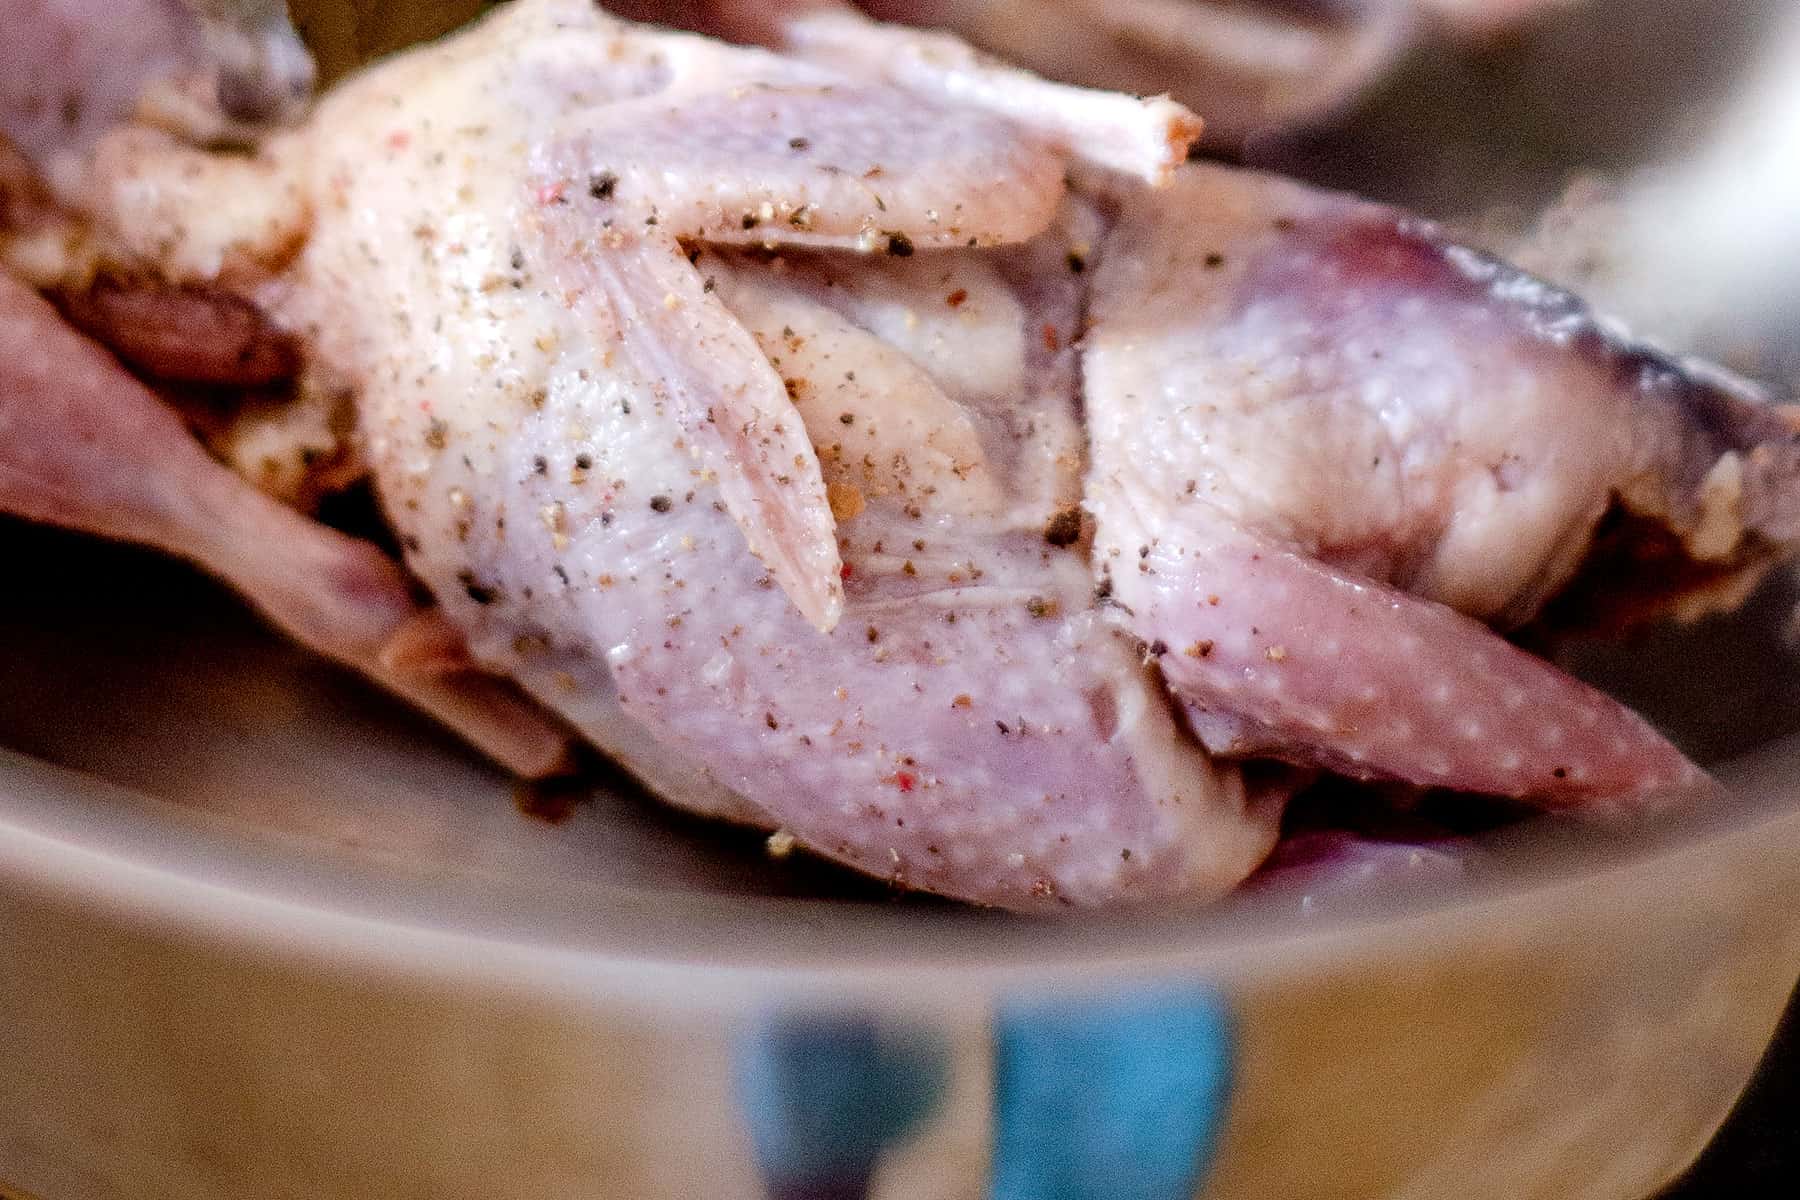 Seasoning the quail